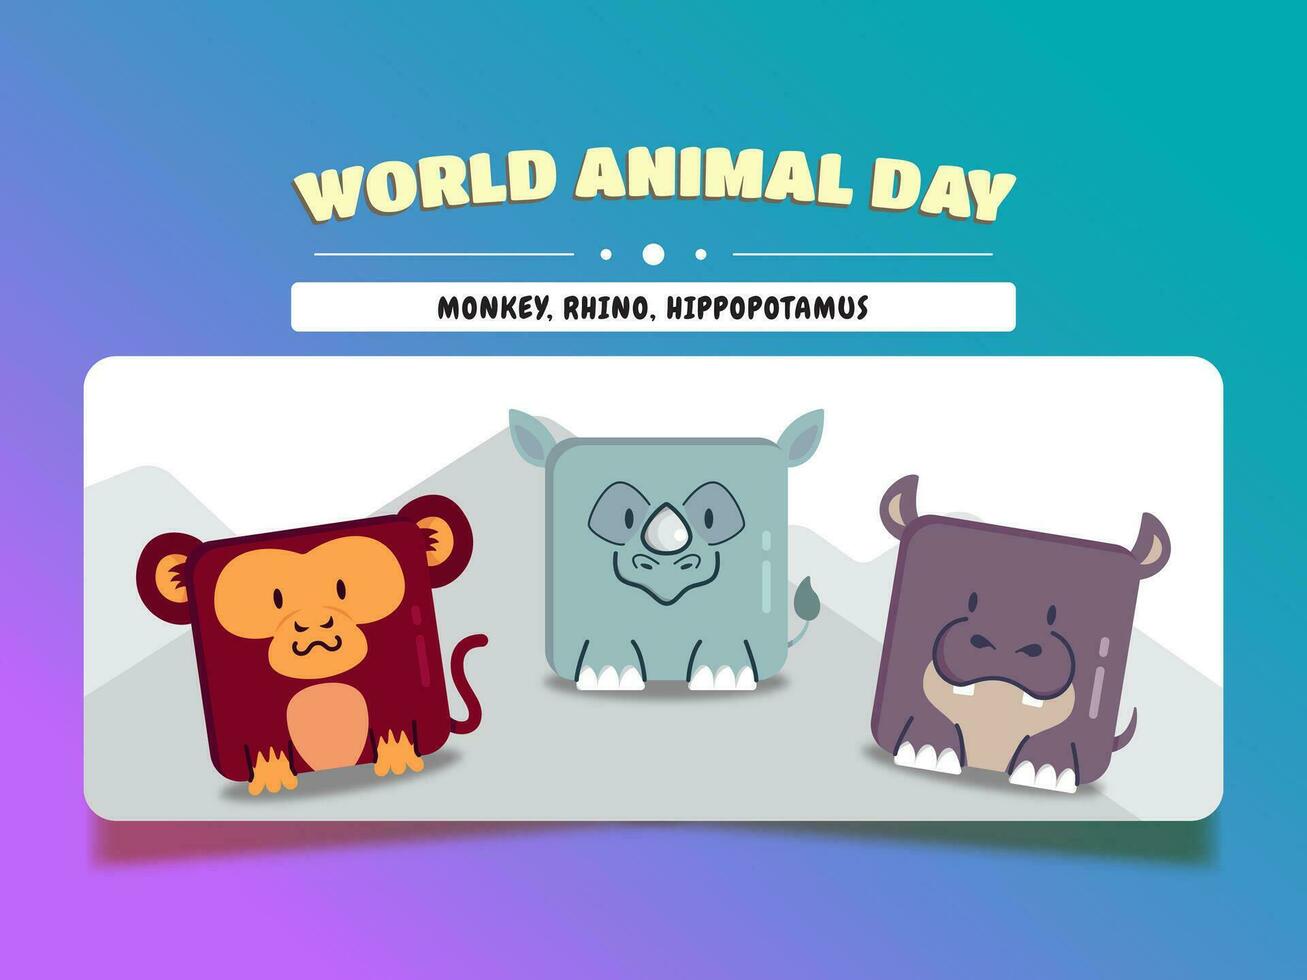 monde animal jour, carré animal dessin animé ensemble singe, rhinocéros, et hippopotame vecteur